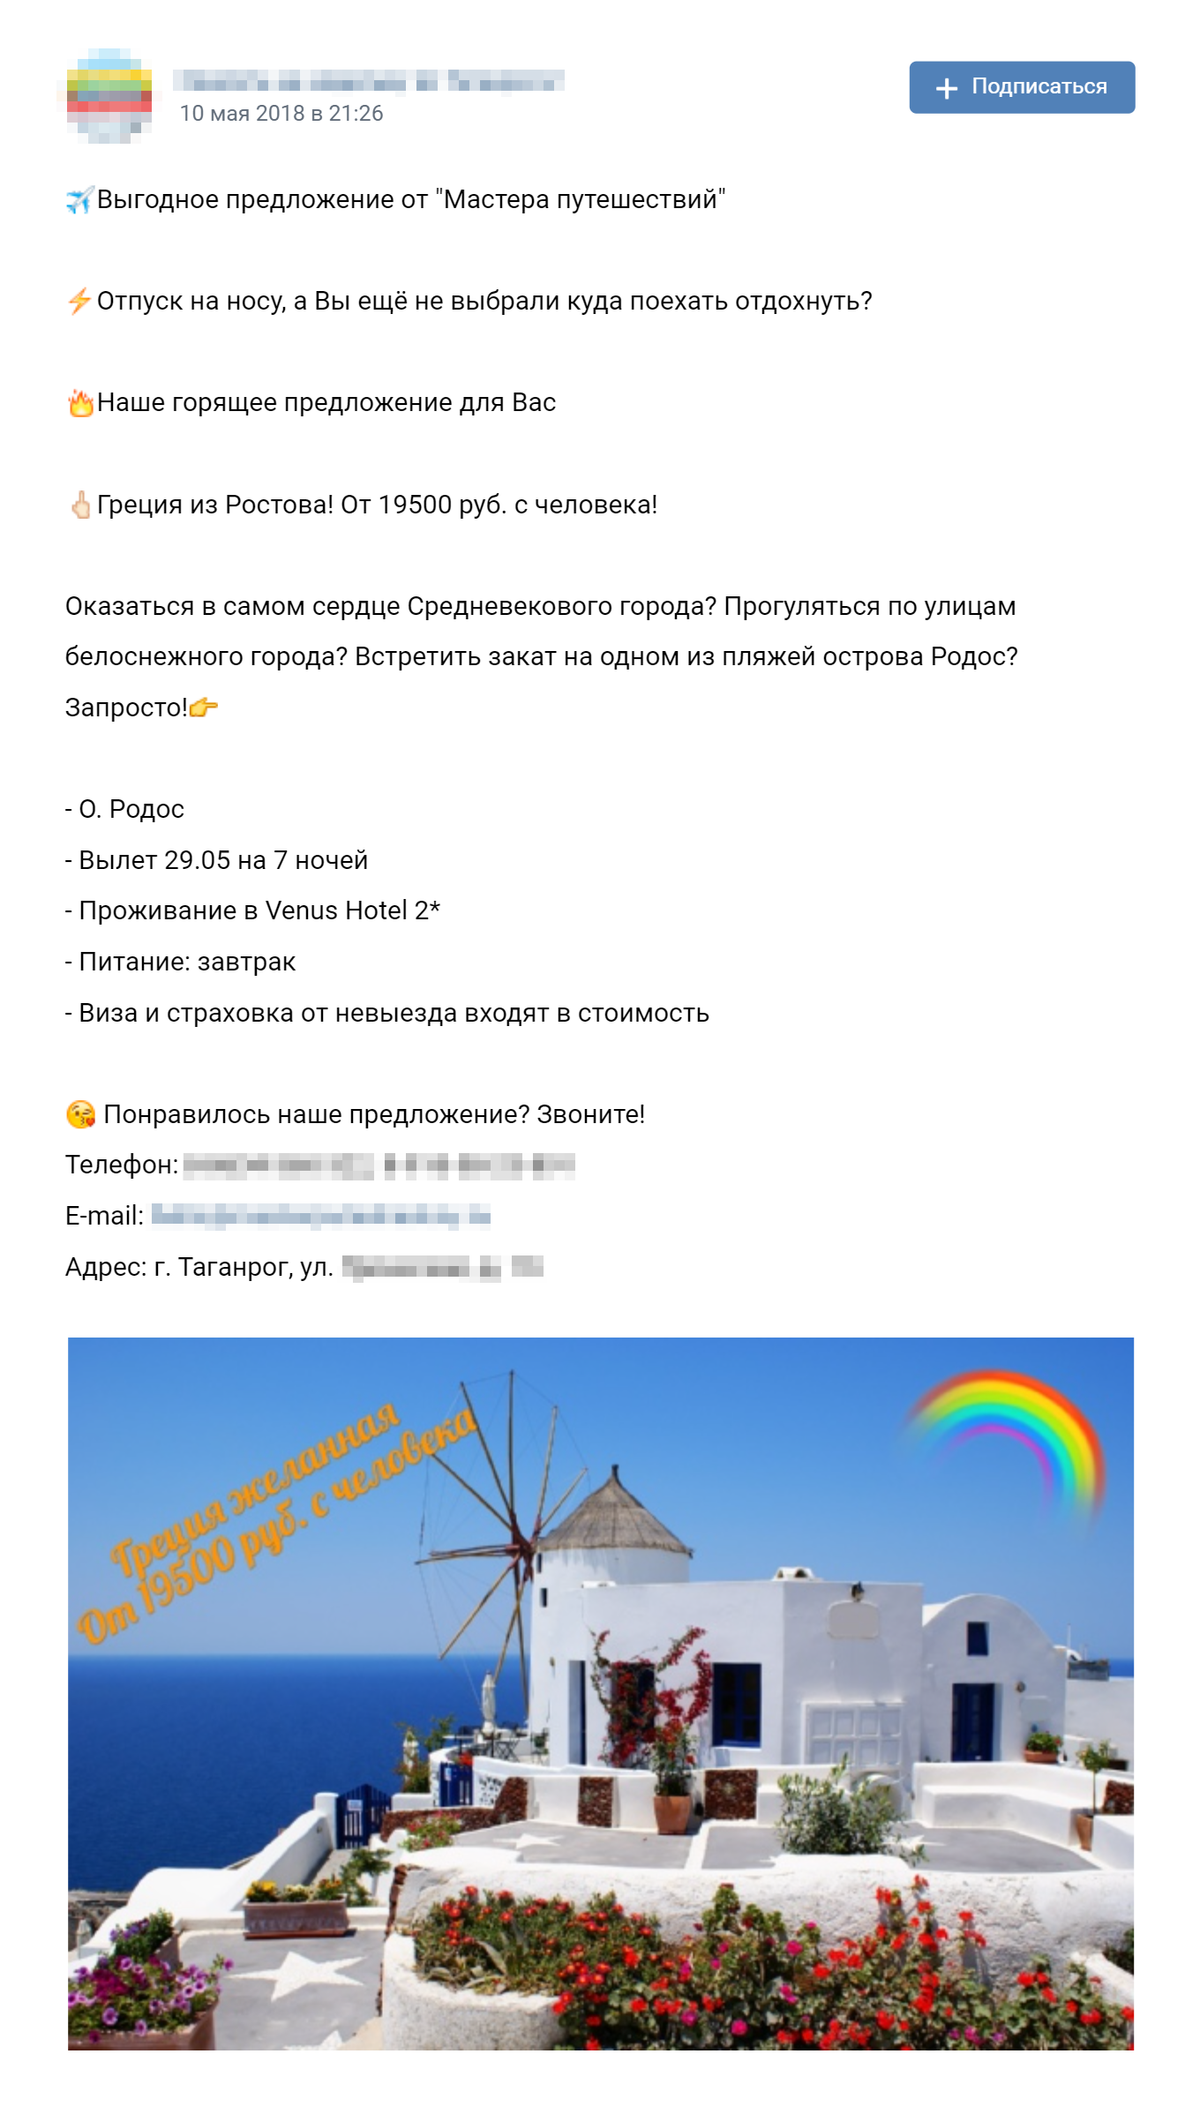 Реклама из моего сообщества во «Вконтакте» похожа на те, что я сначала постил в «Одноклассниках». Подводка, красивое фото, цена и описание, что входит в тур